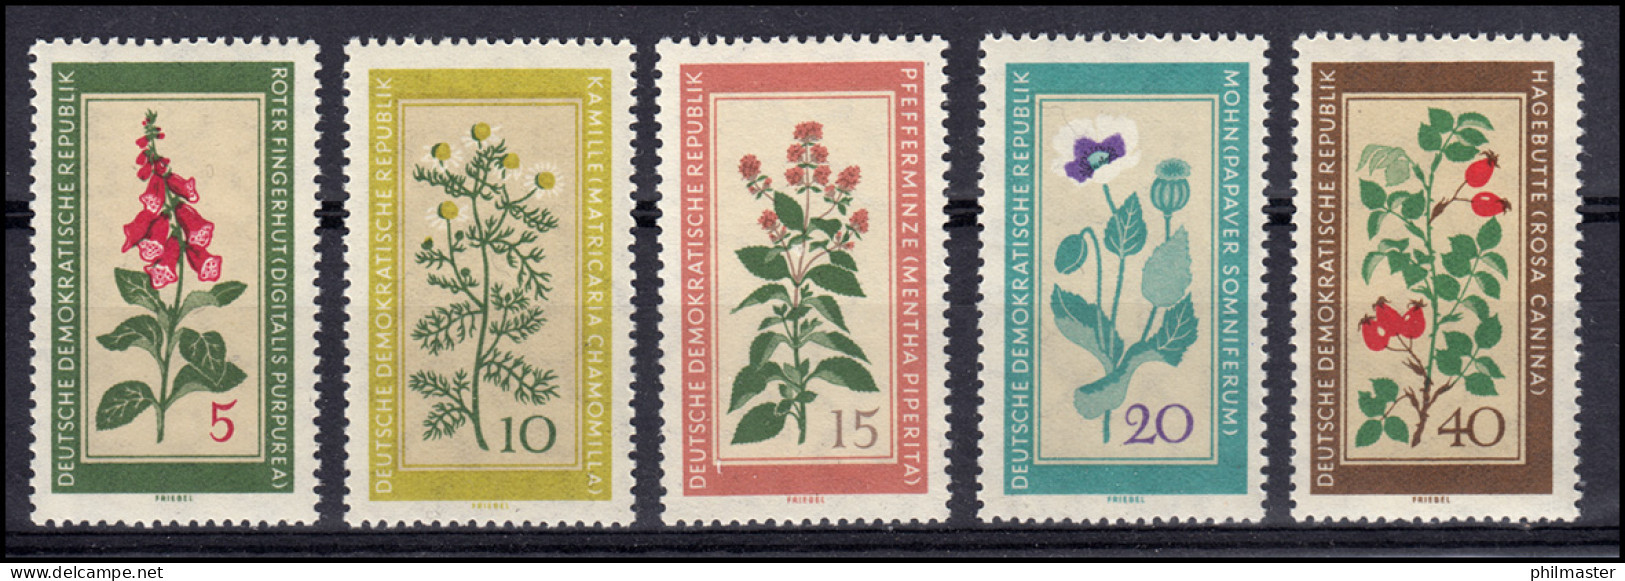 757-761 Einheimische Heilpflanzen - Satz **, Sperrwert 761 Geprüft Schönherr BPP - Unused Stamps